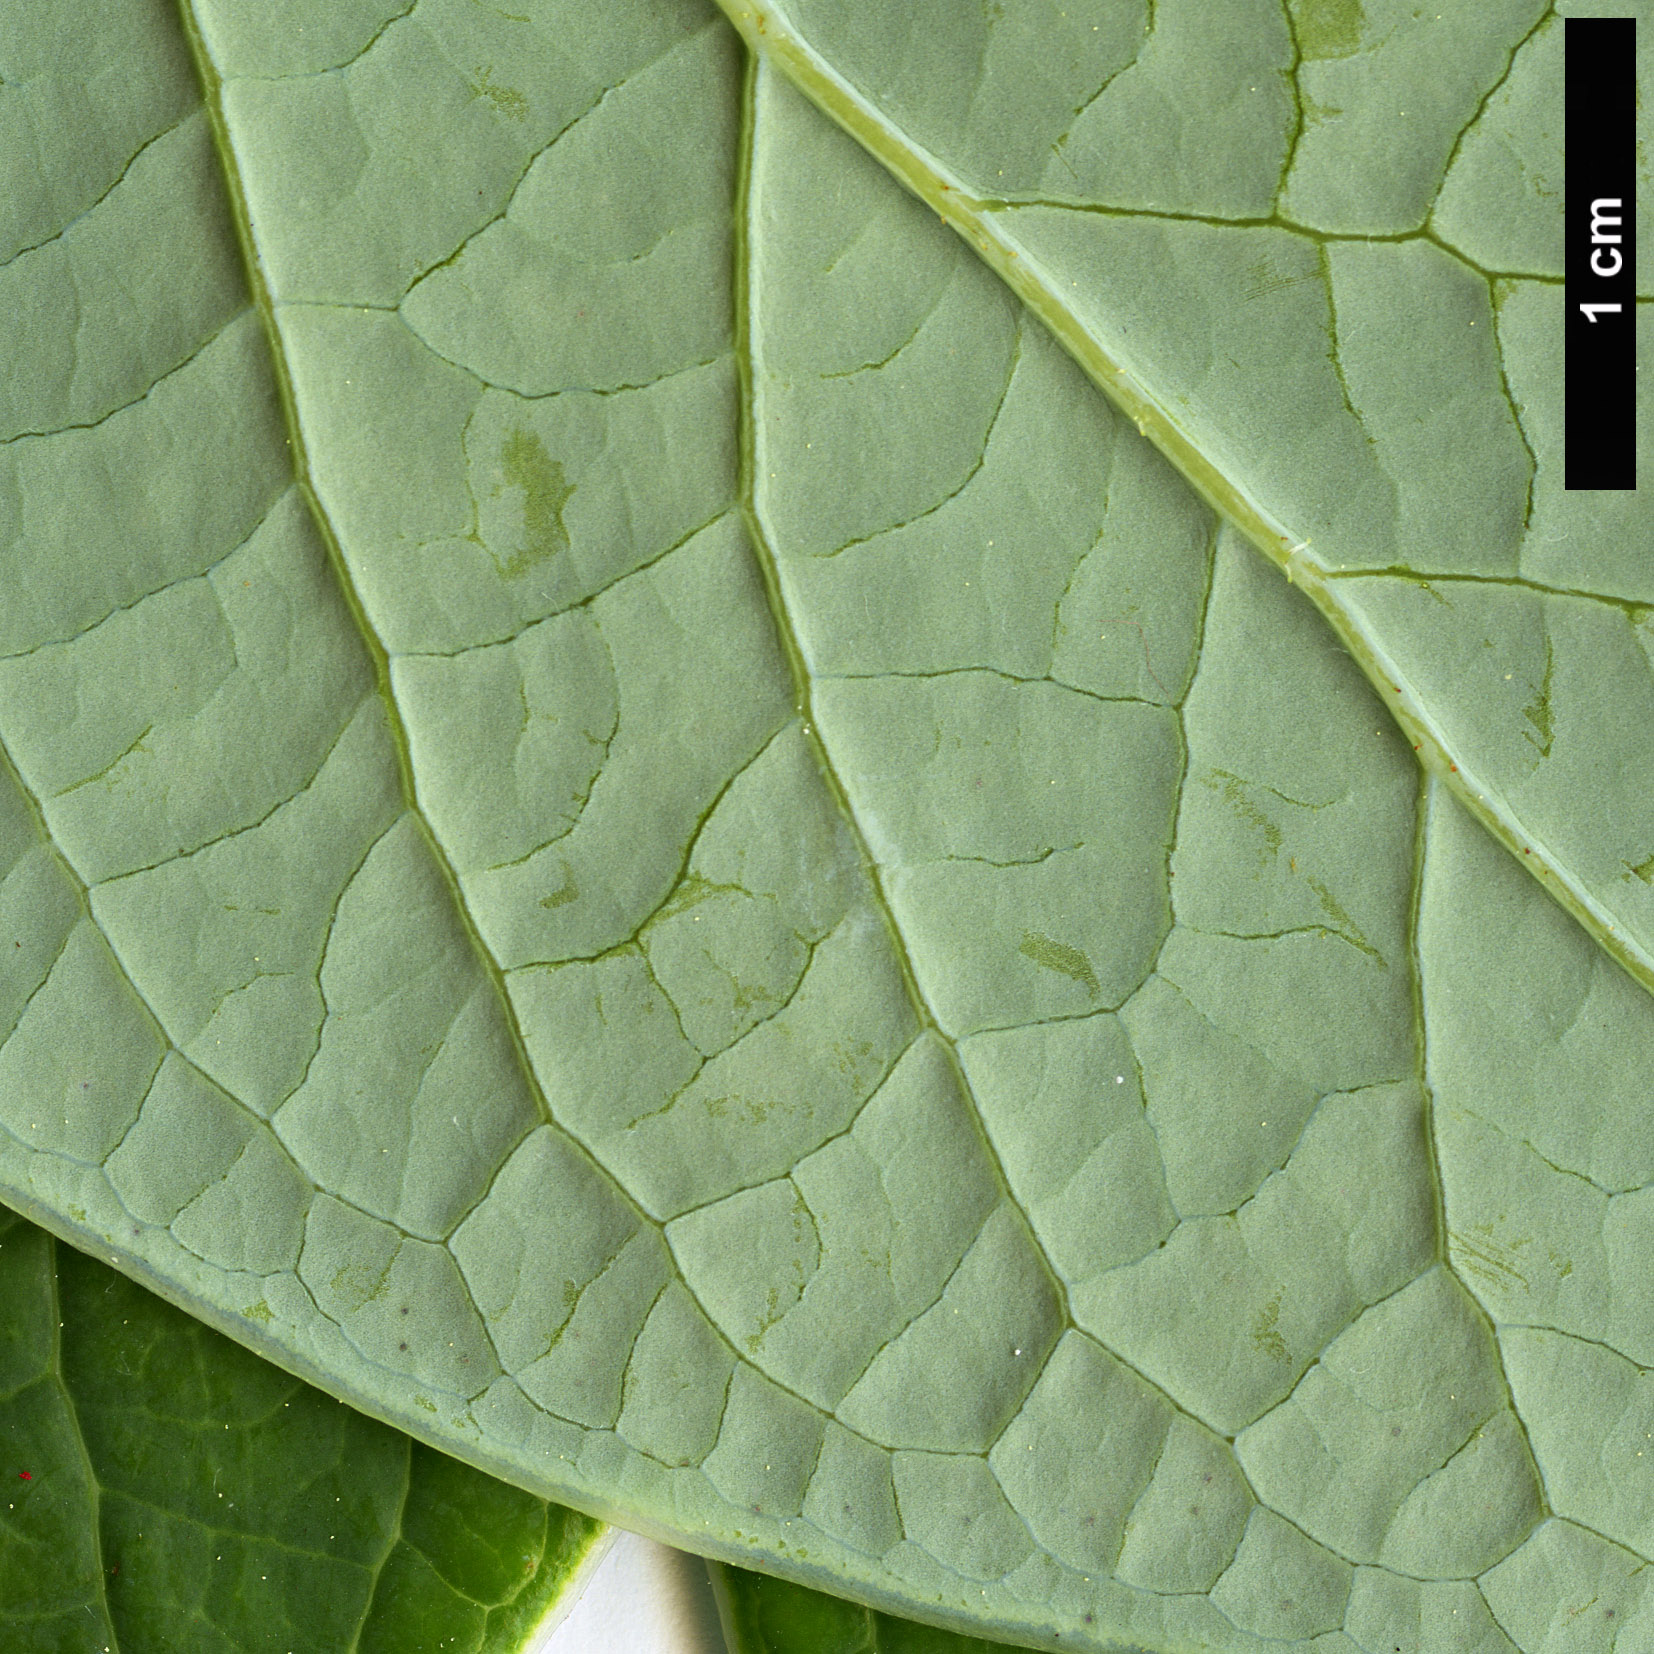 High resolution image: Family: Ericaceae - Genus: Vaccinium - Taxon: gaultheriifolium